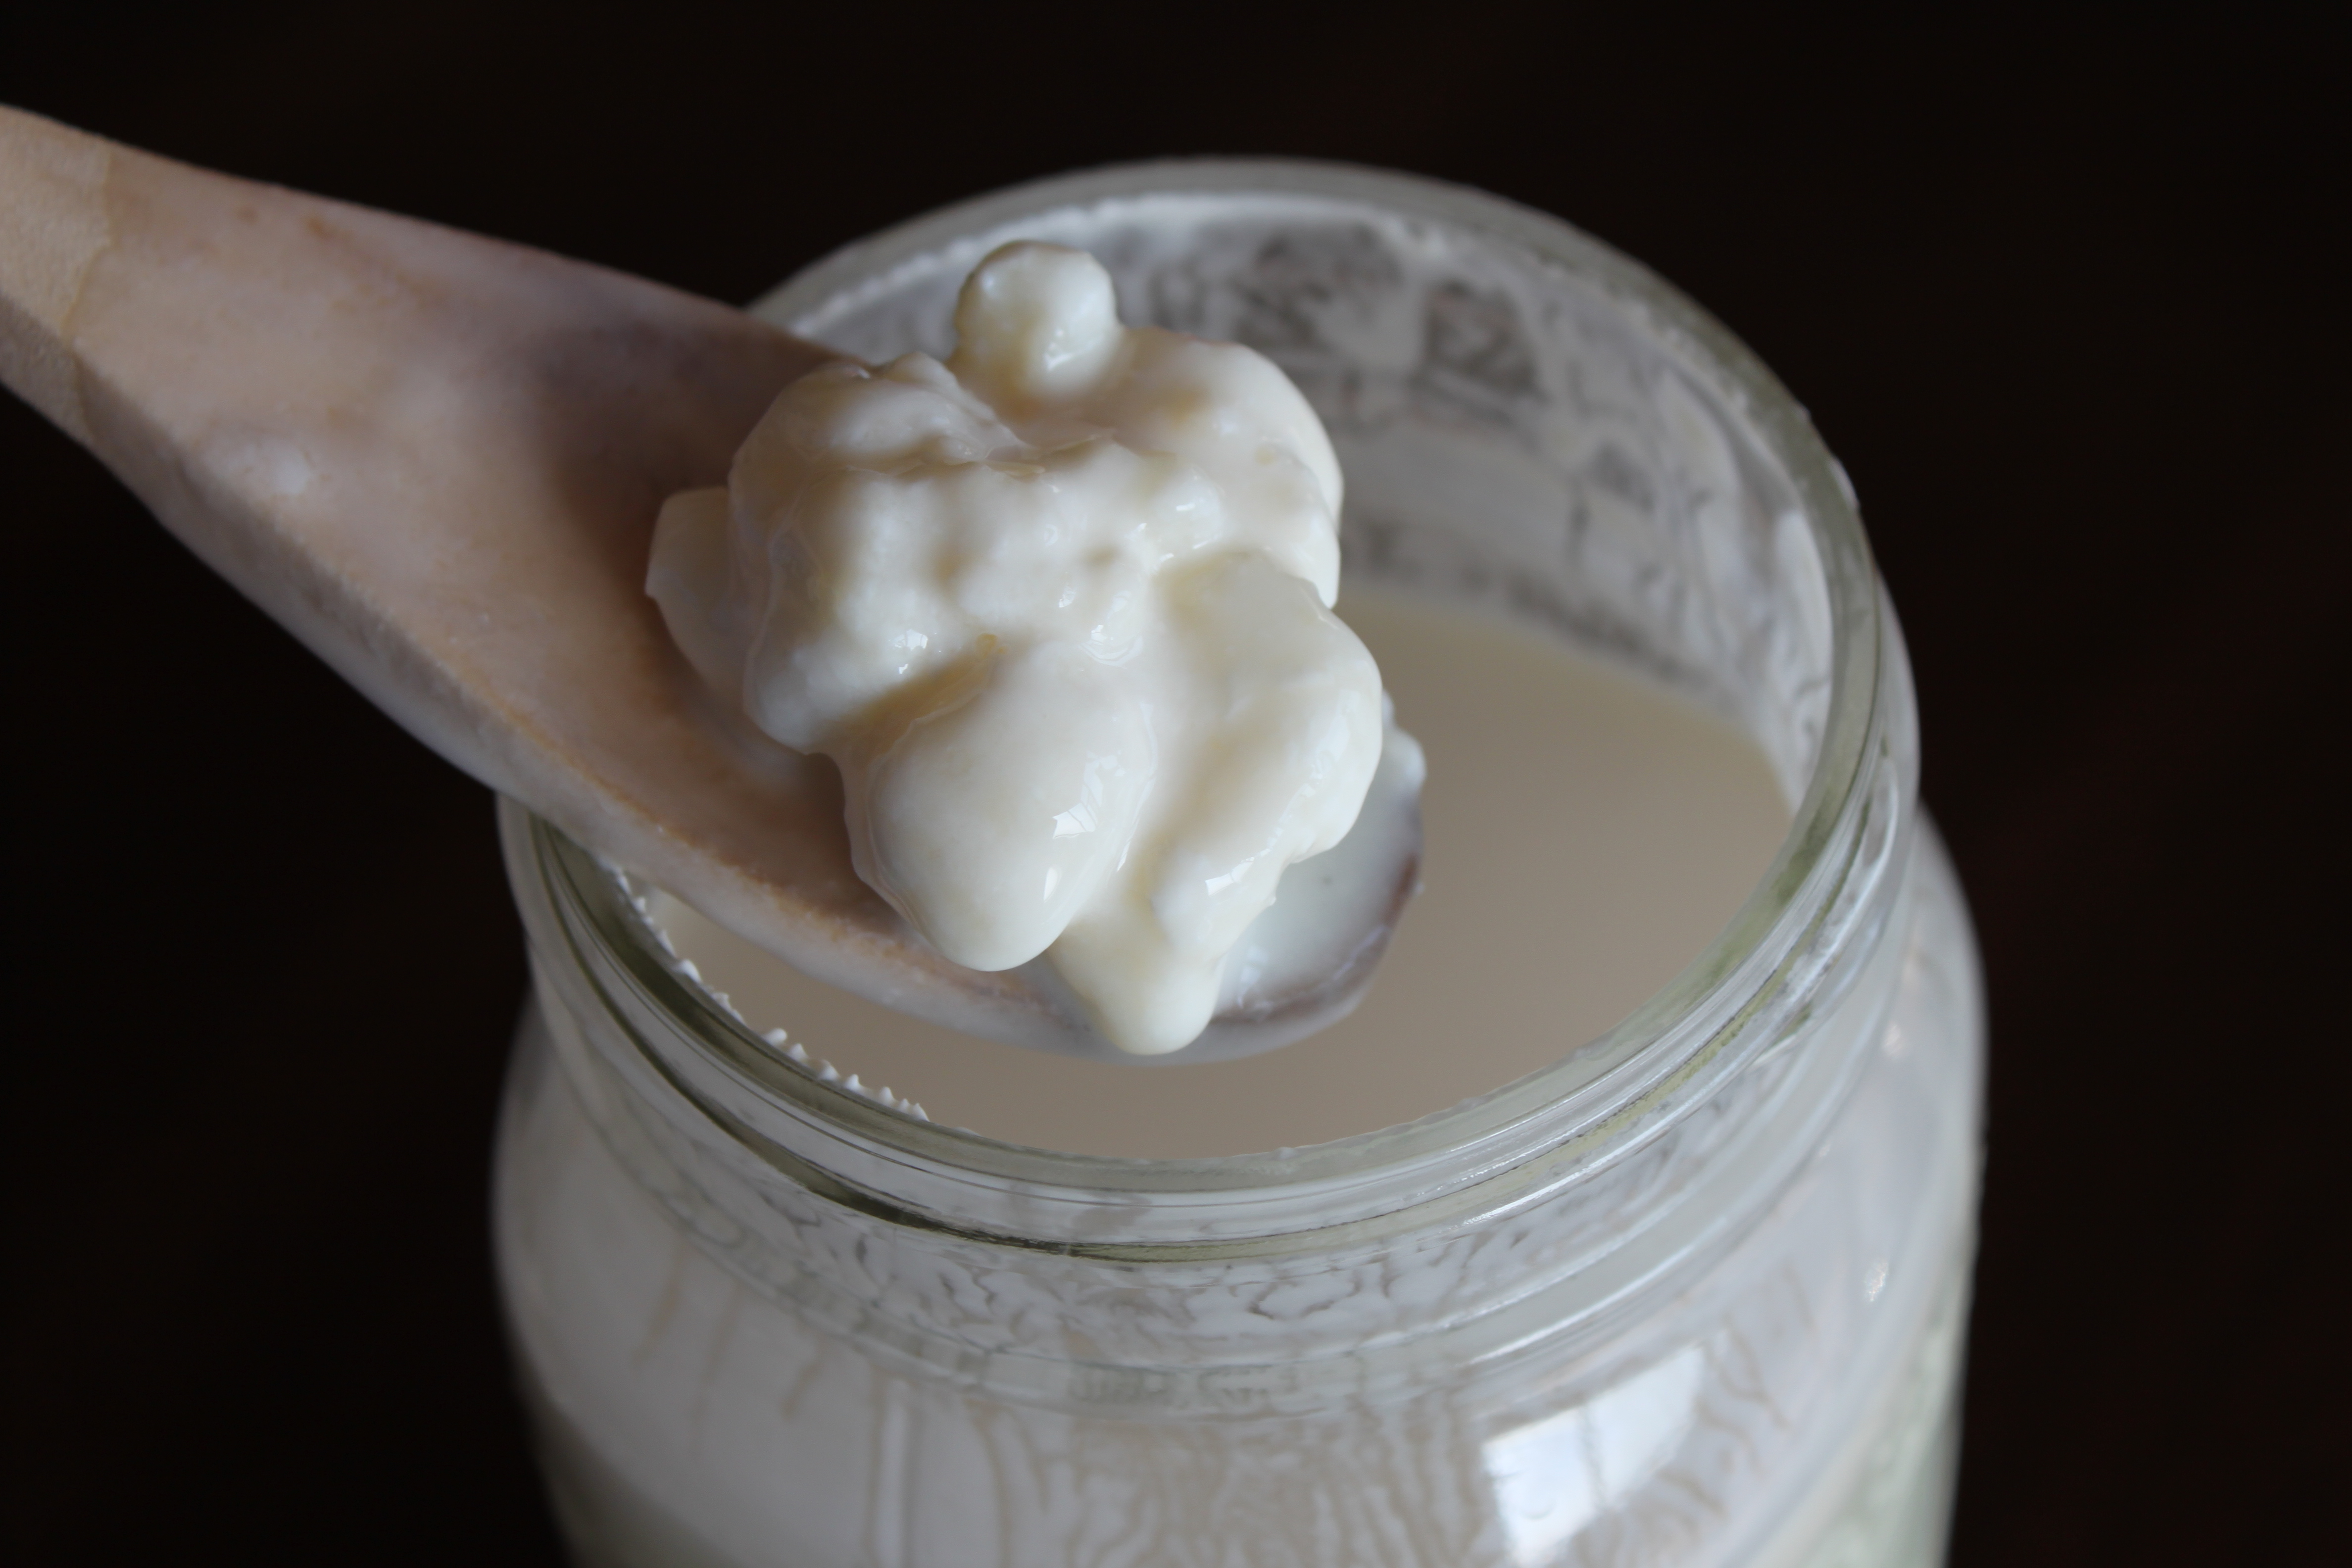 Кефир - феноменалан млечни производ у домаћинству